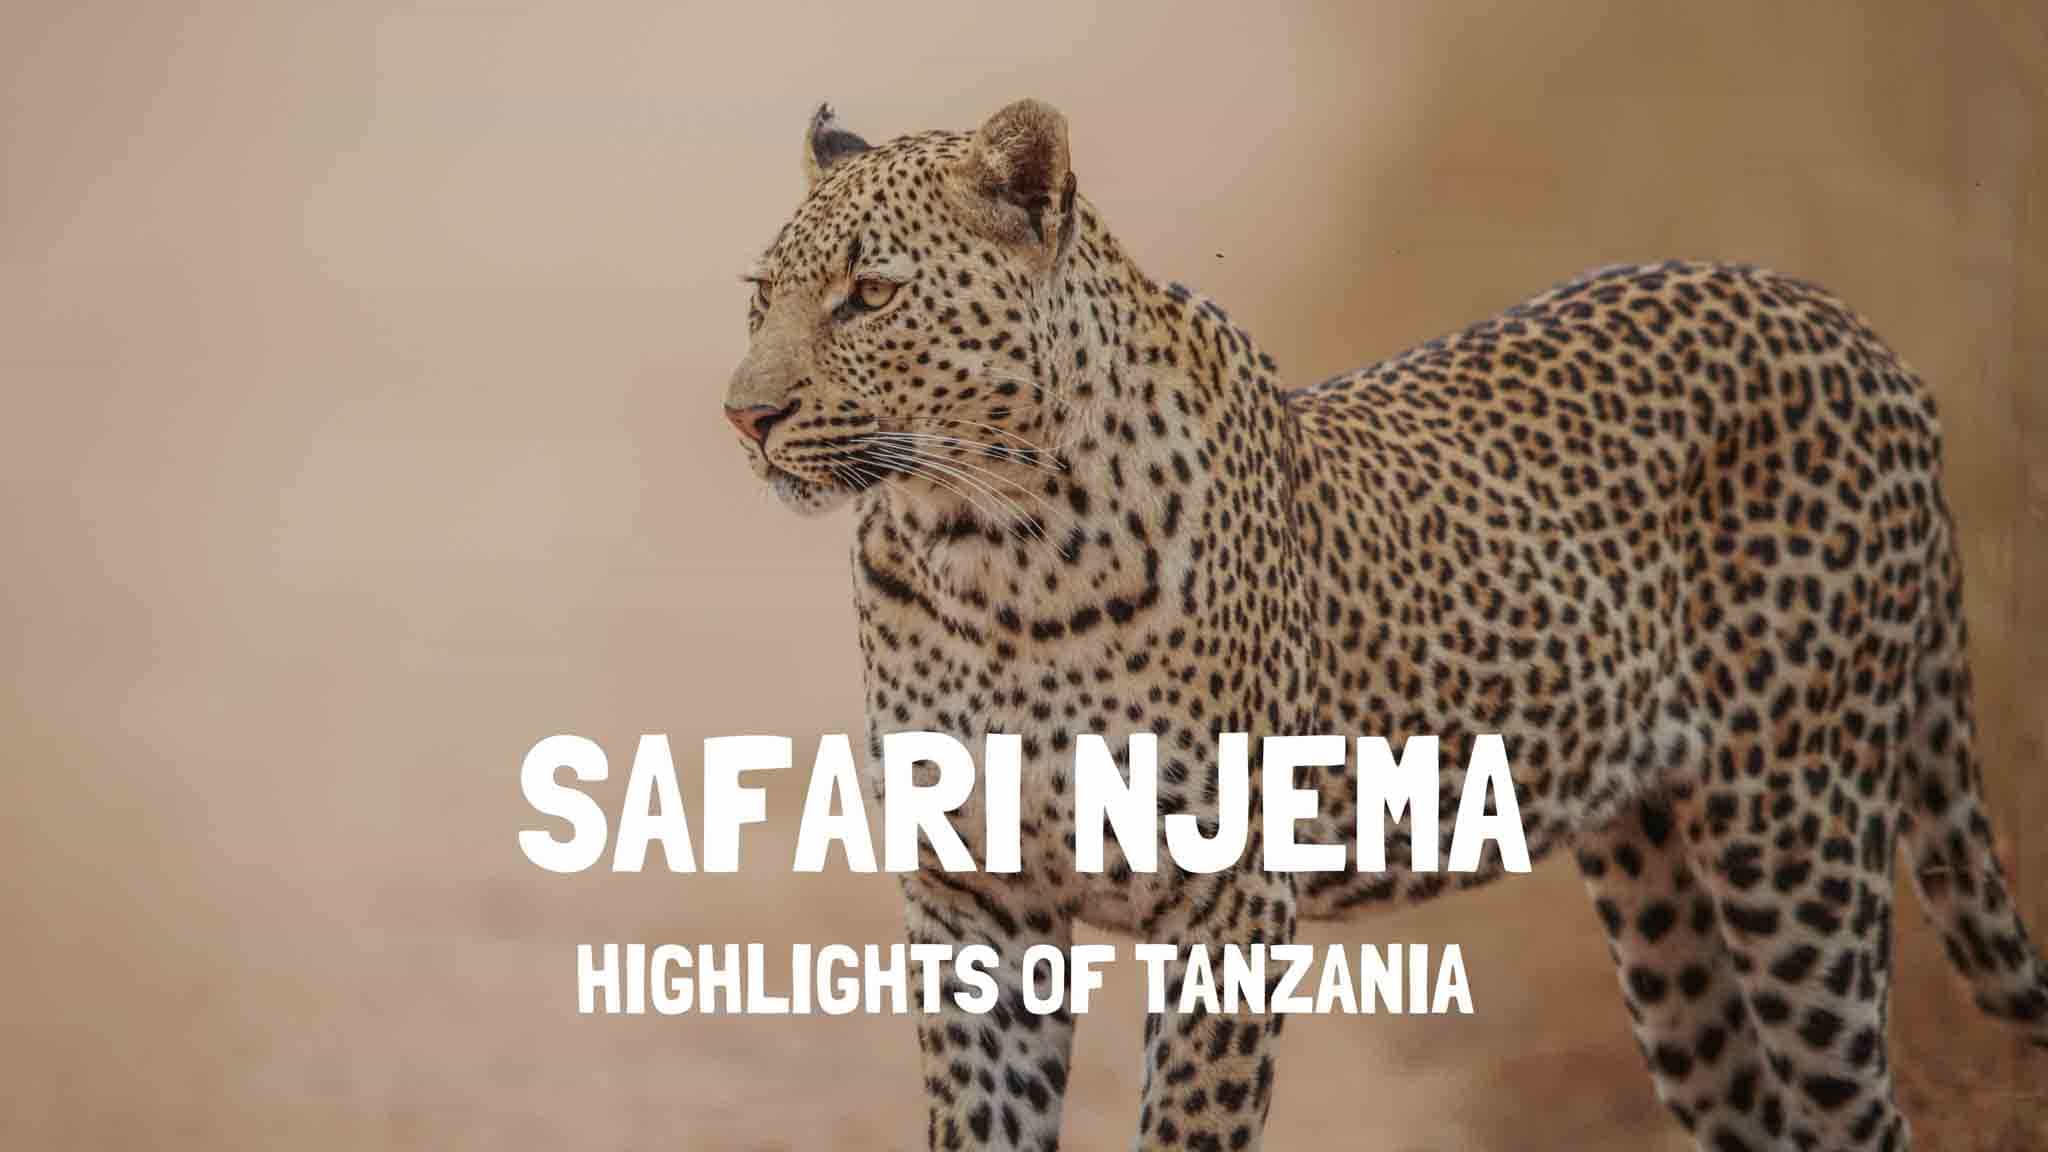 Safari Njema Tanzania - Highlights of Tanzania